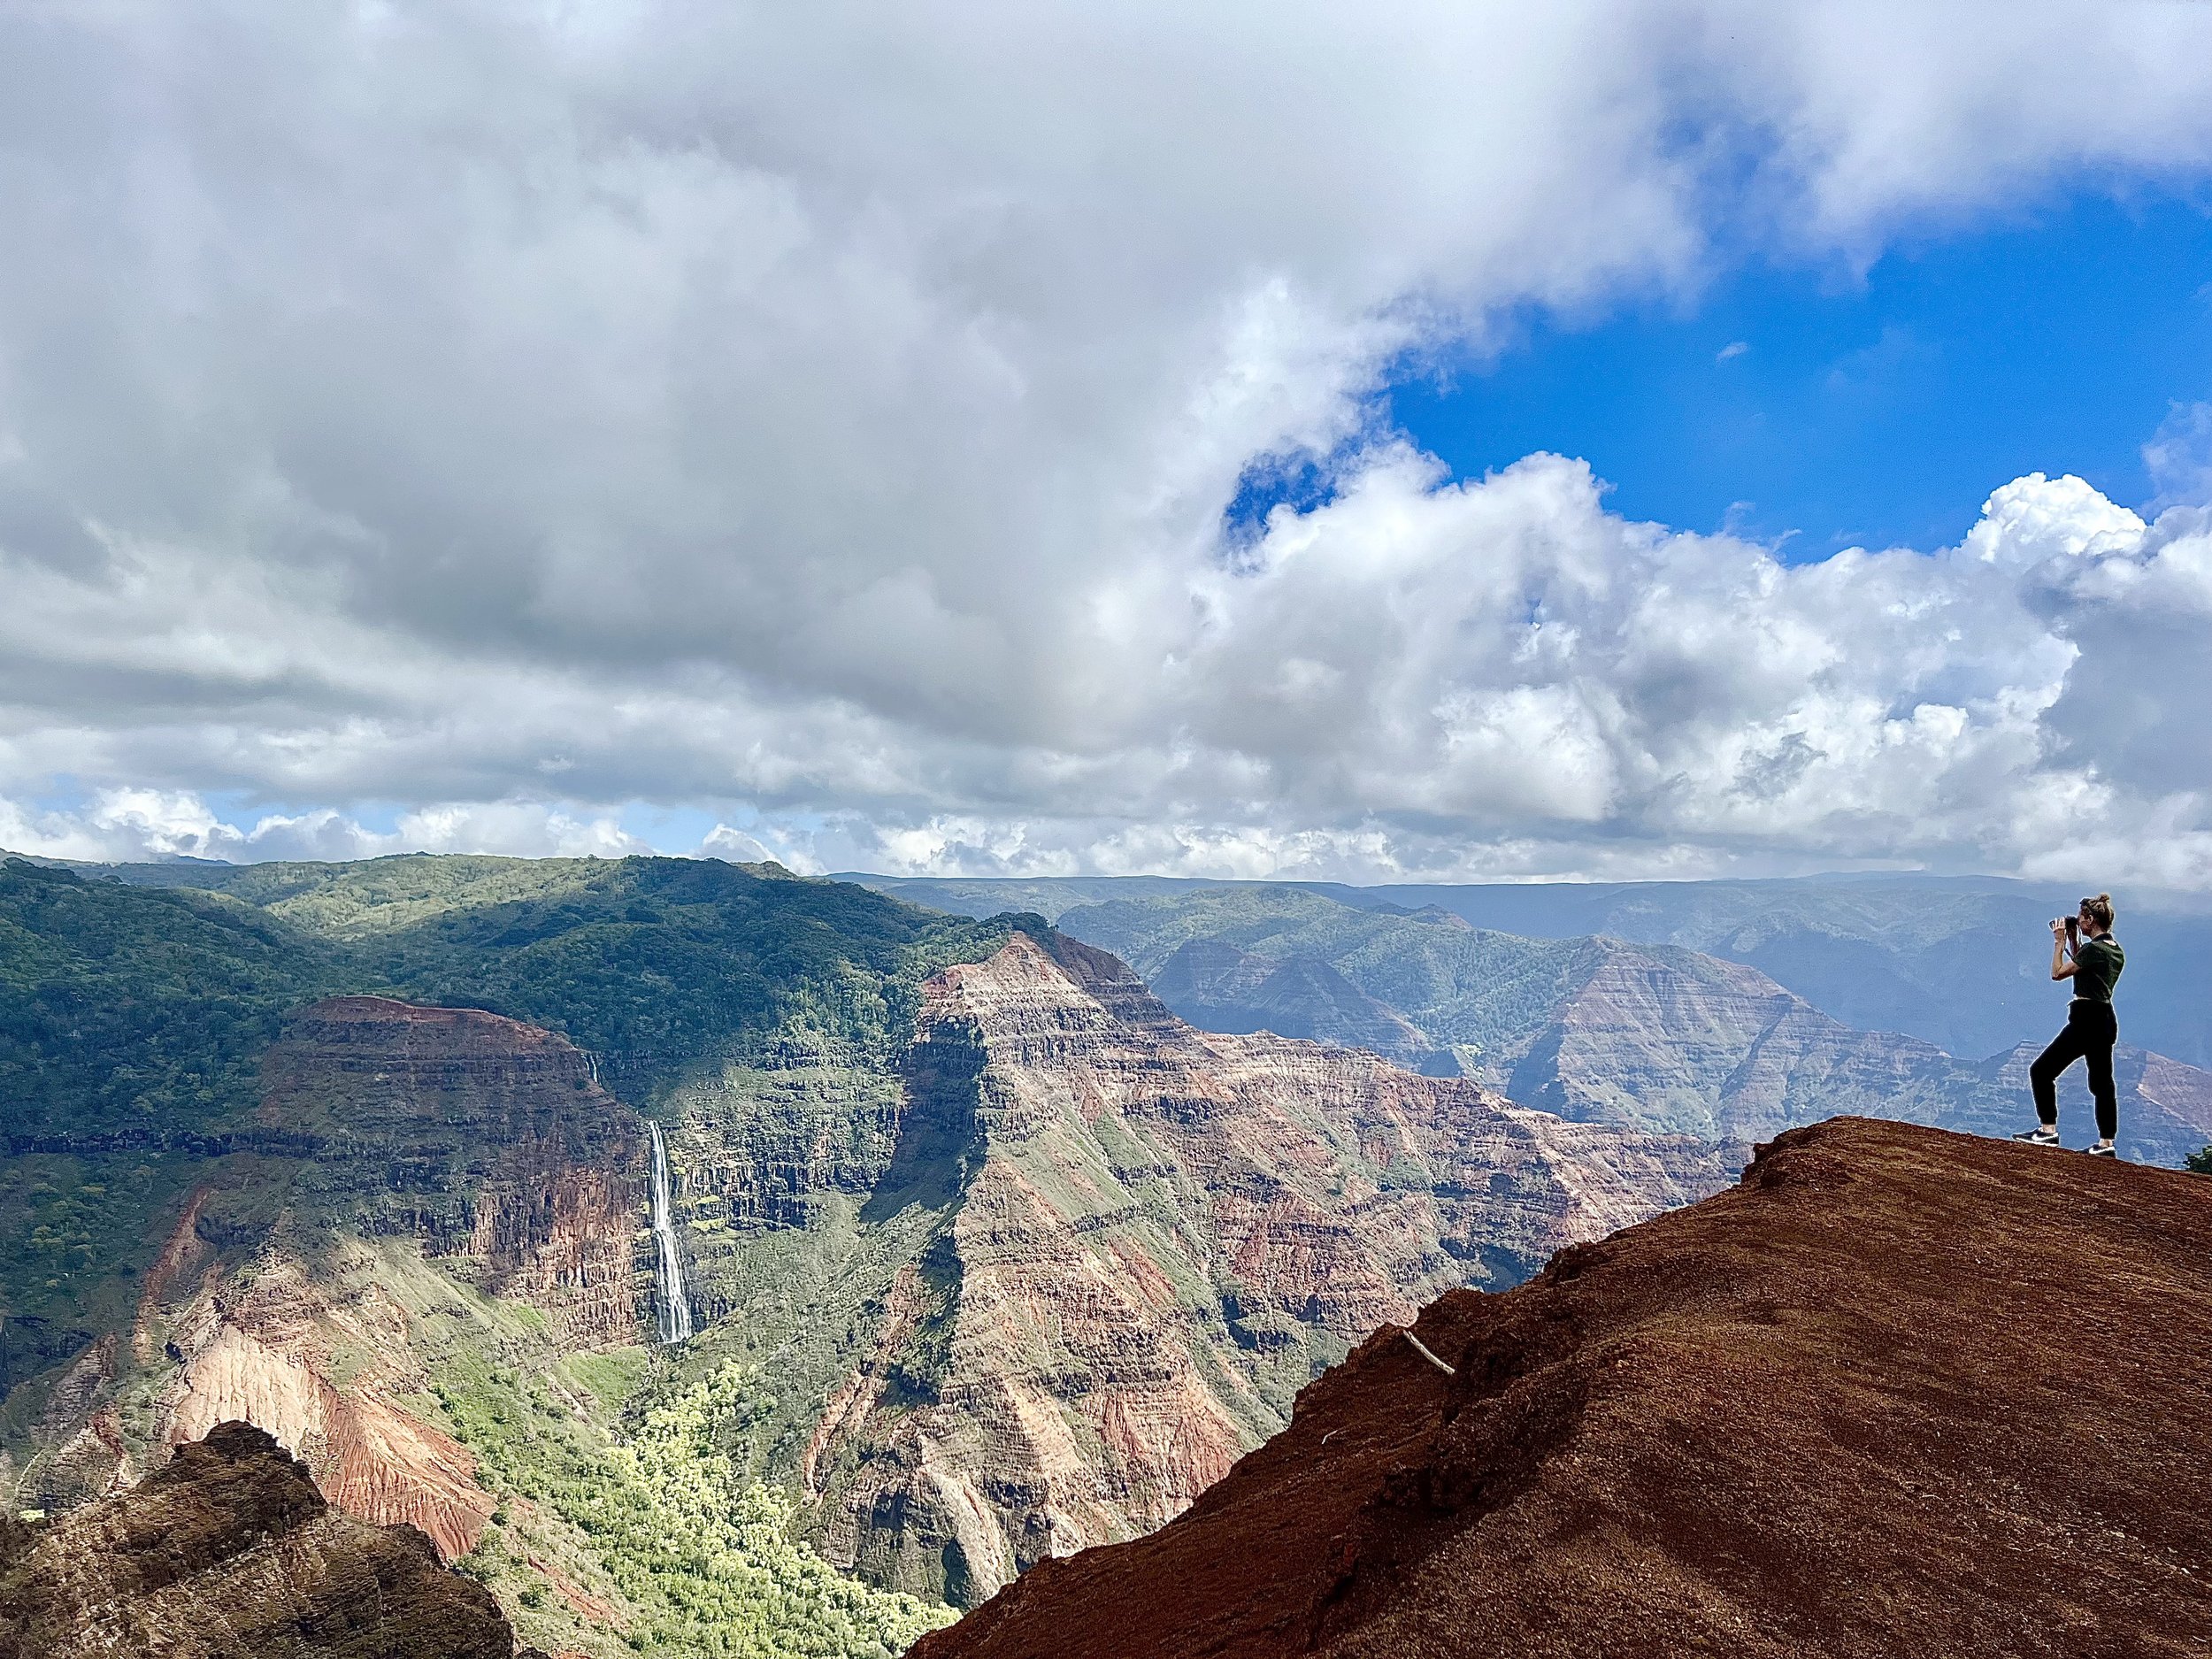 In awe of the views at Waimea Canyon, Kauai